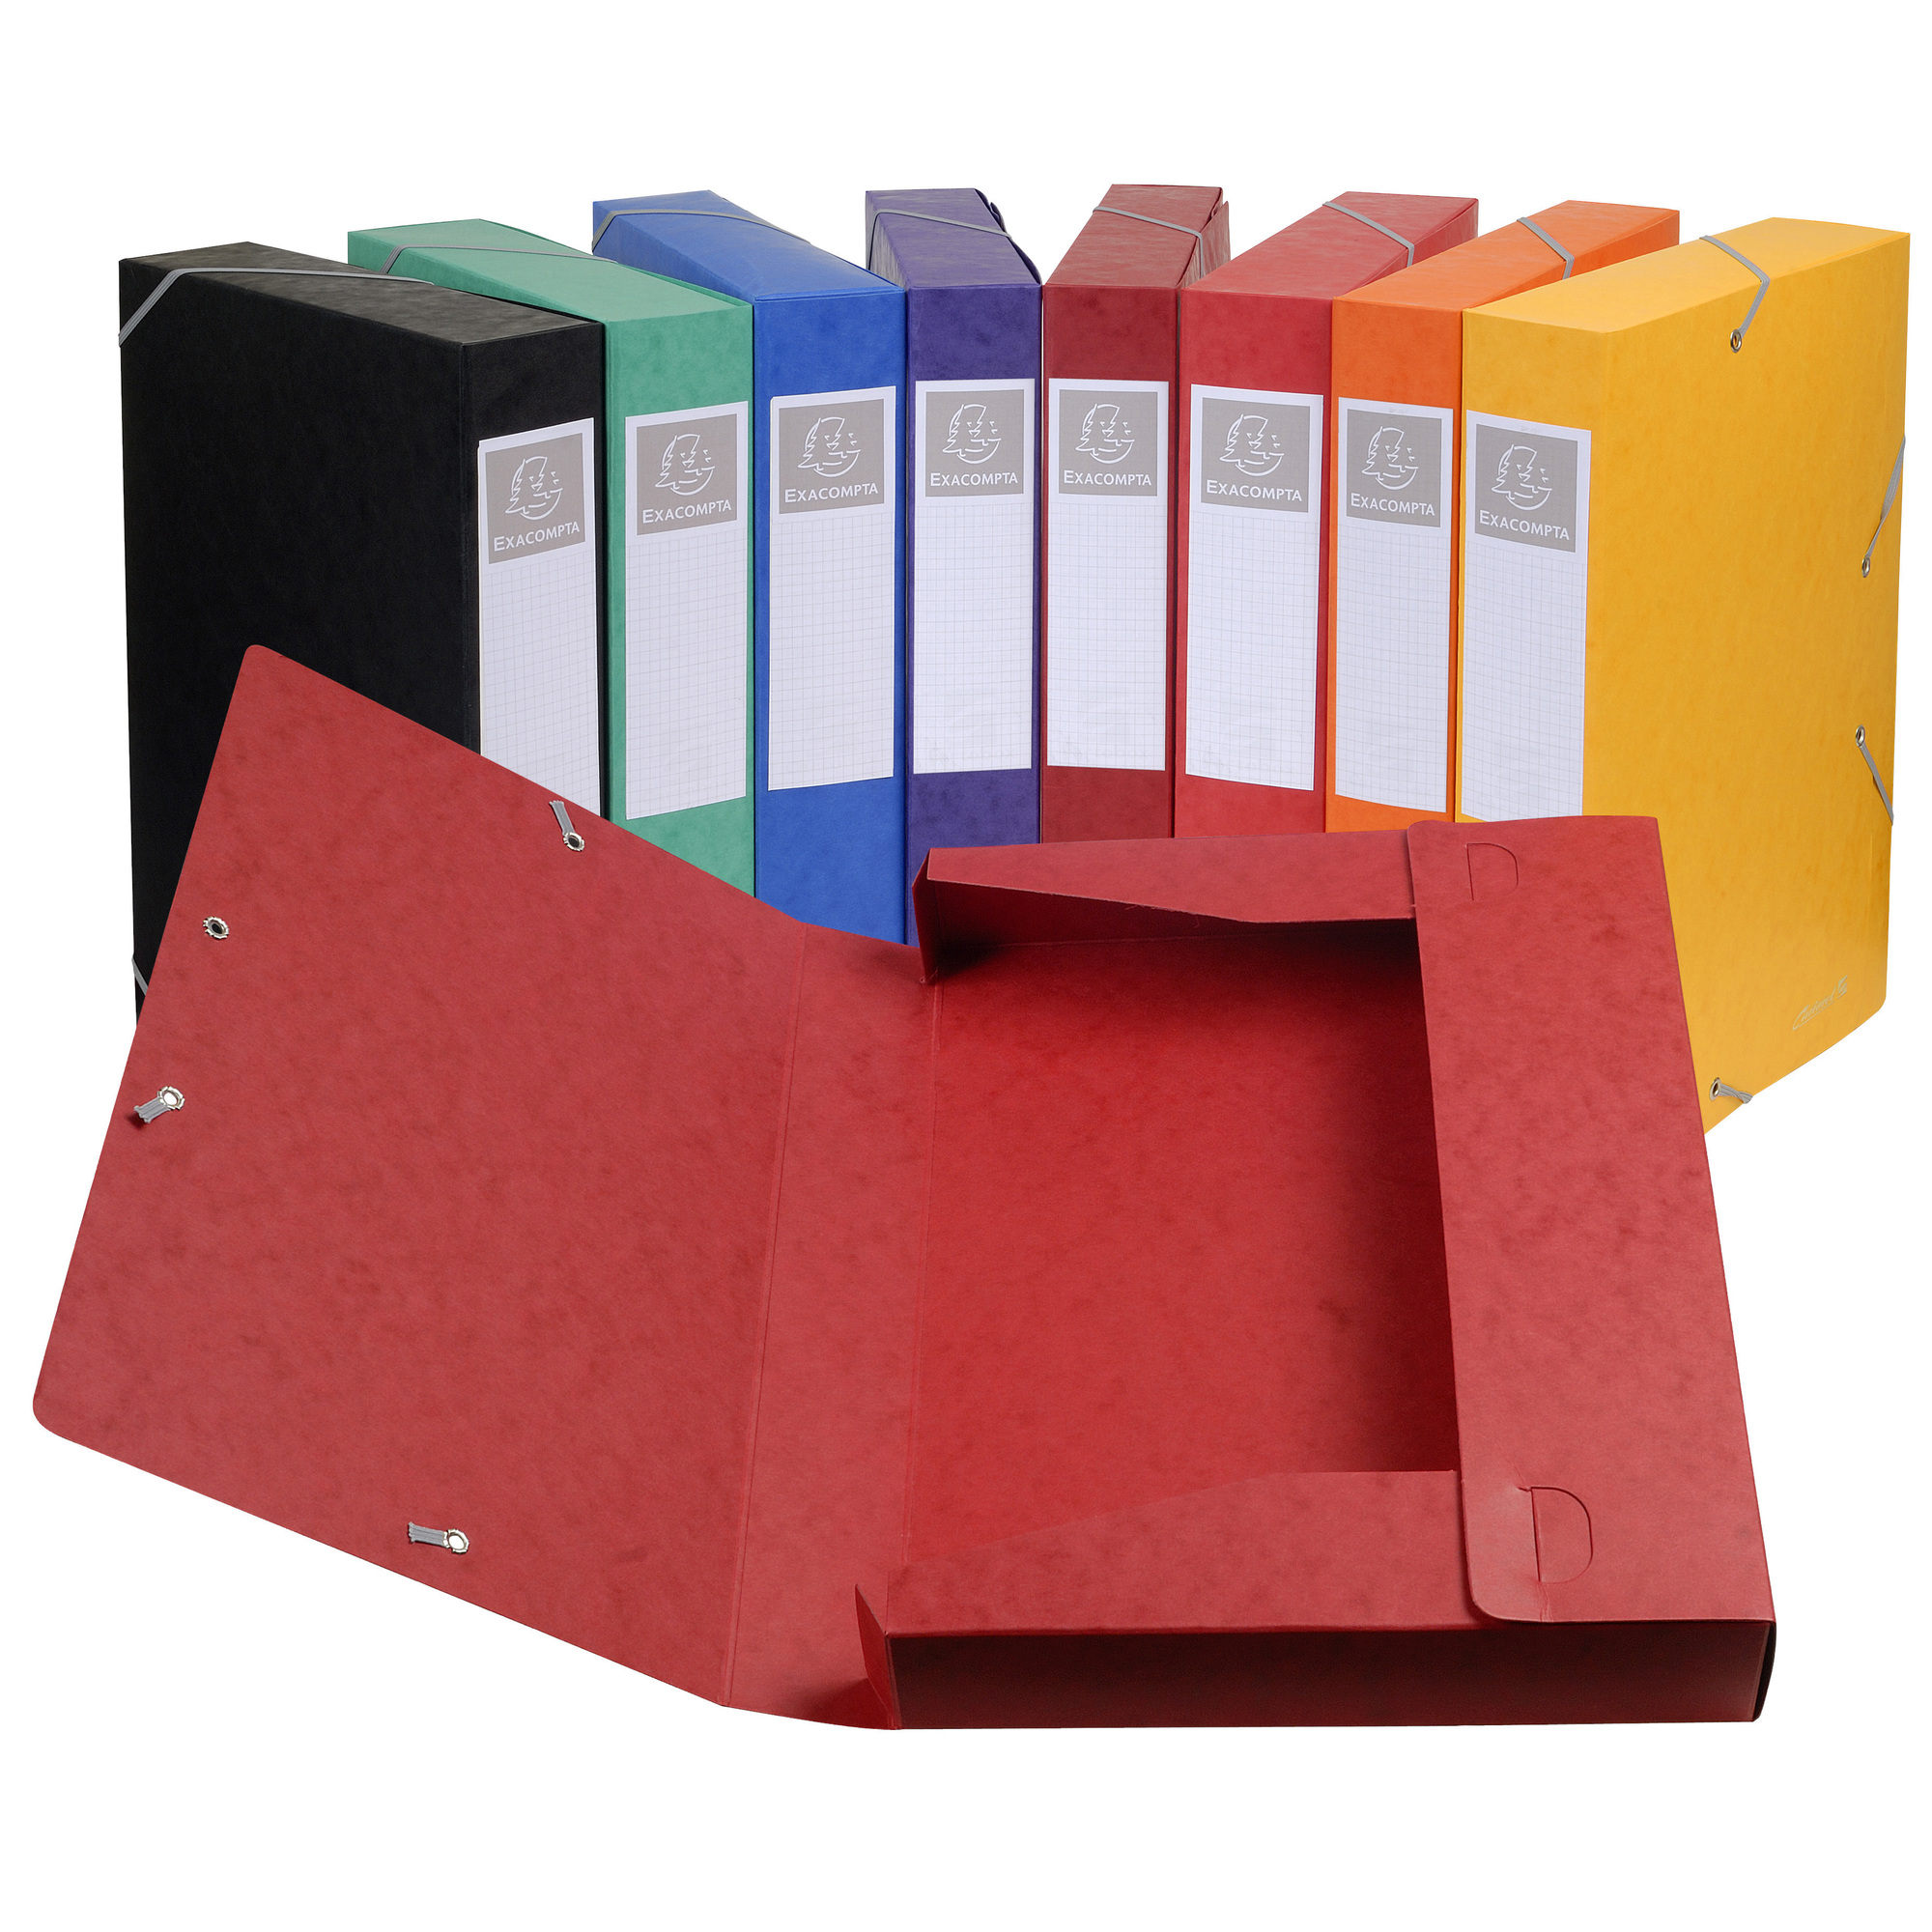 Scatola per archivio consegnata piatta Cartobox dorso 50mm carta lucida  Nature Future® - Colori assortiti su